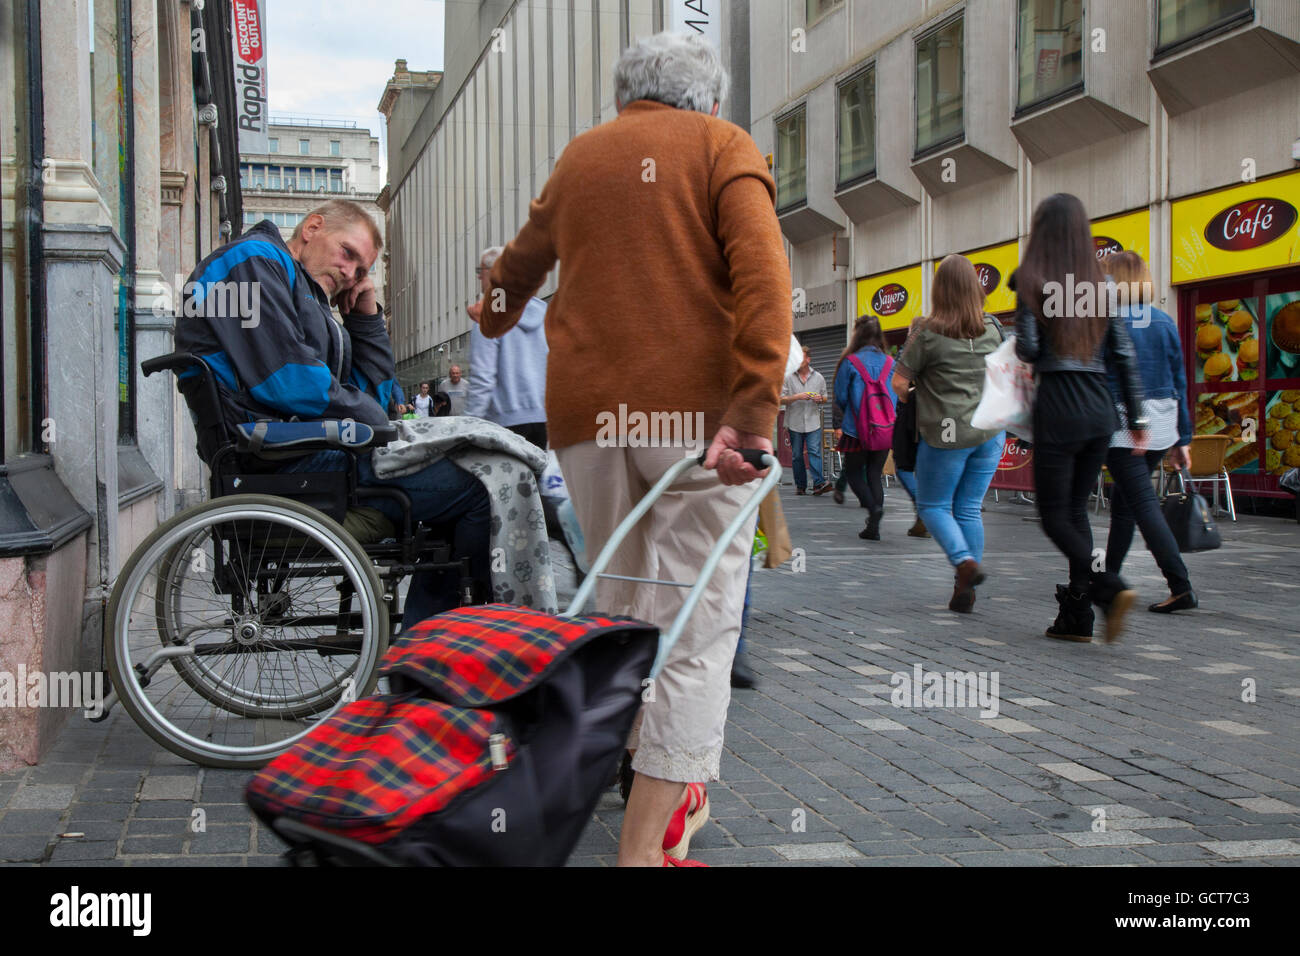 Hilfe für den obdachlosen, behinderten Bettler, der im Rollstuhl sitzt und von einem Passanten in Liverpool, Merseyside, Großbritannien, eine Geldspende erhalten hat Stockfoto